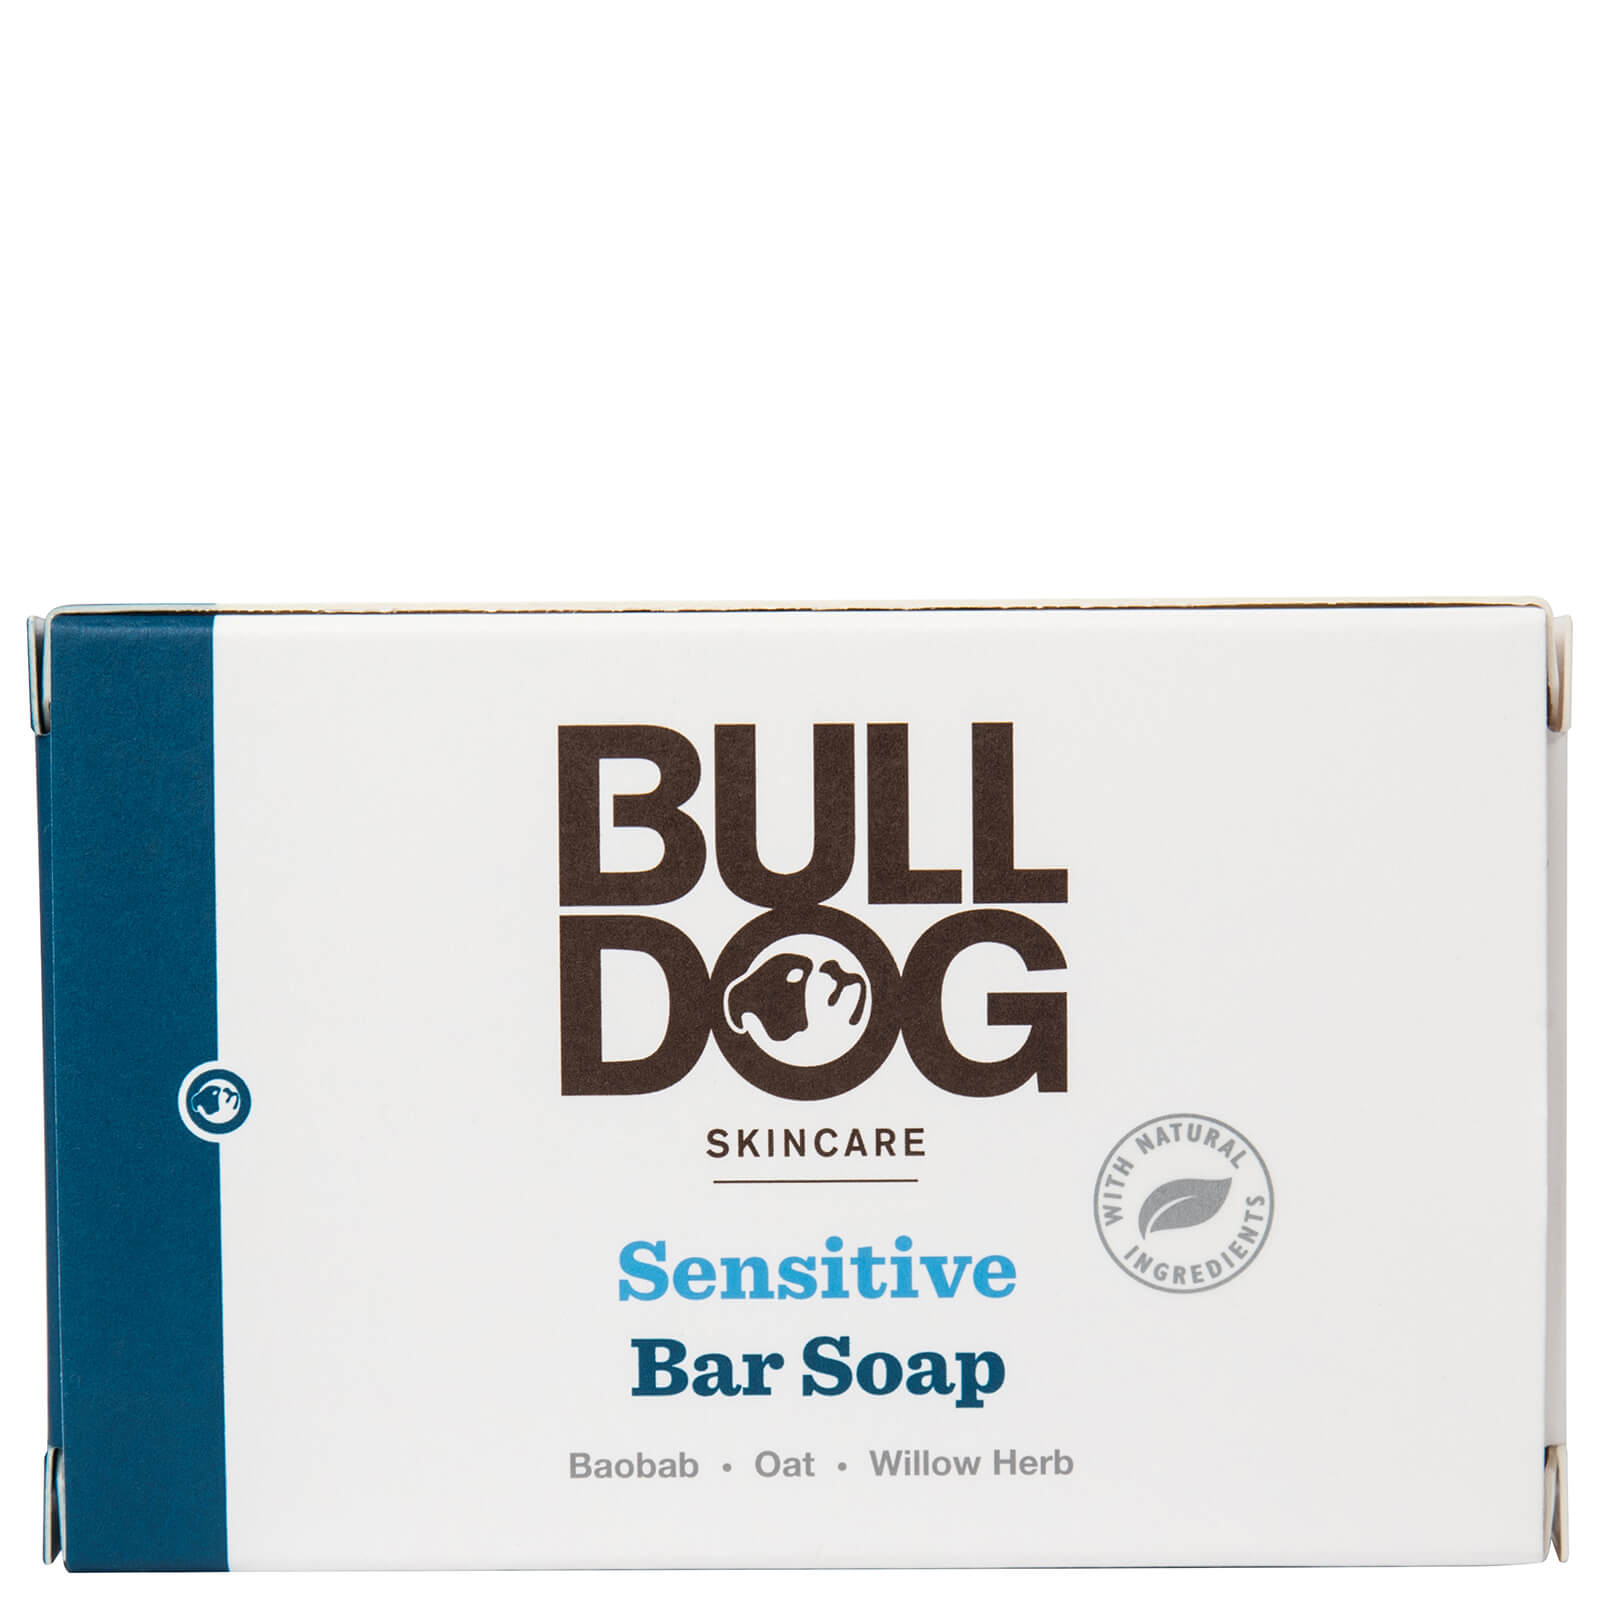 Bulldog Sensitive Bar Soap 200g